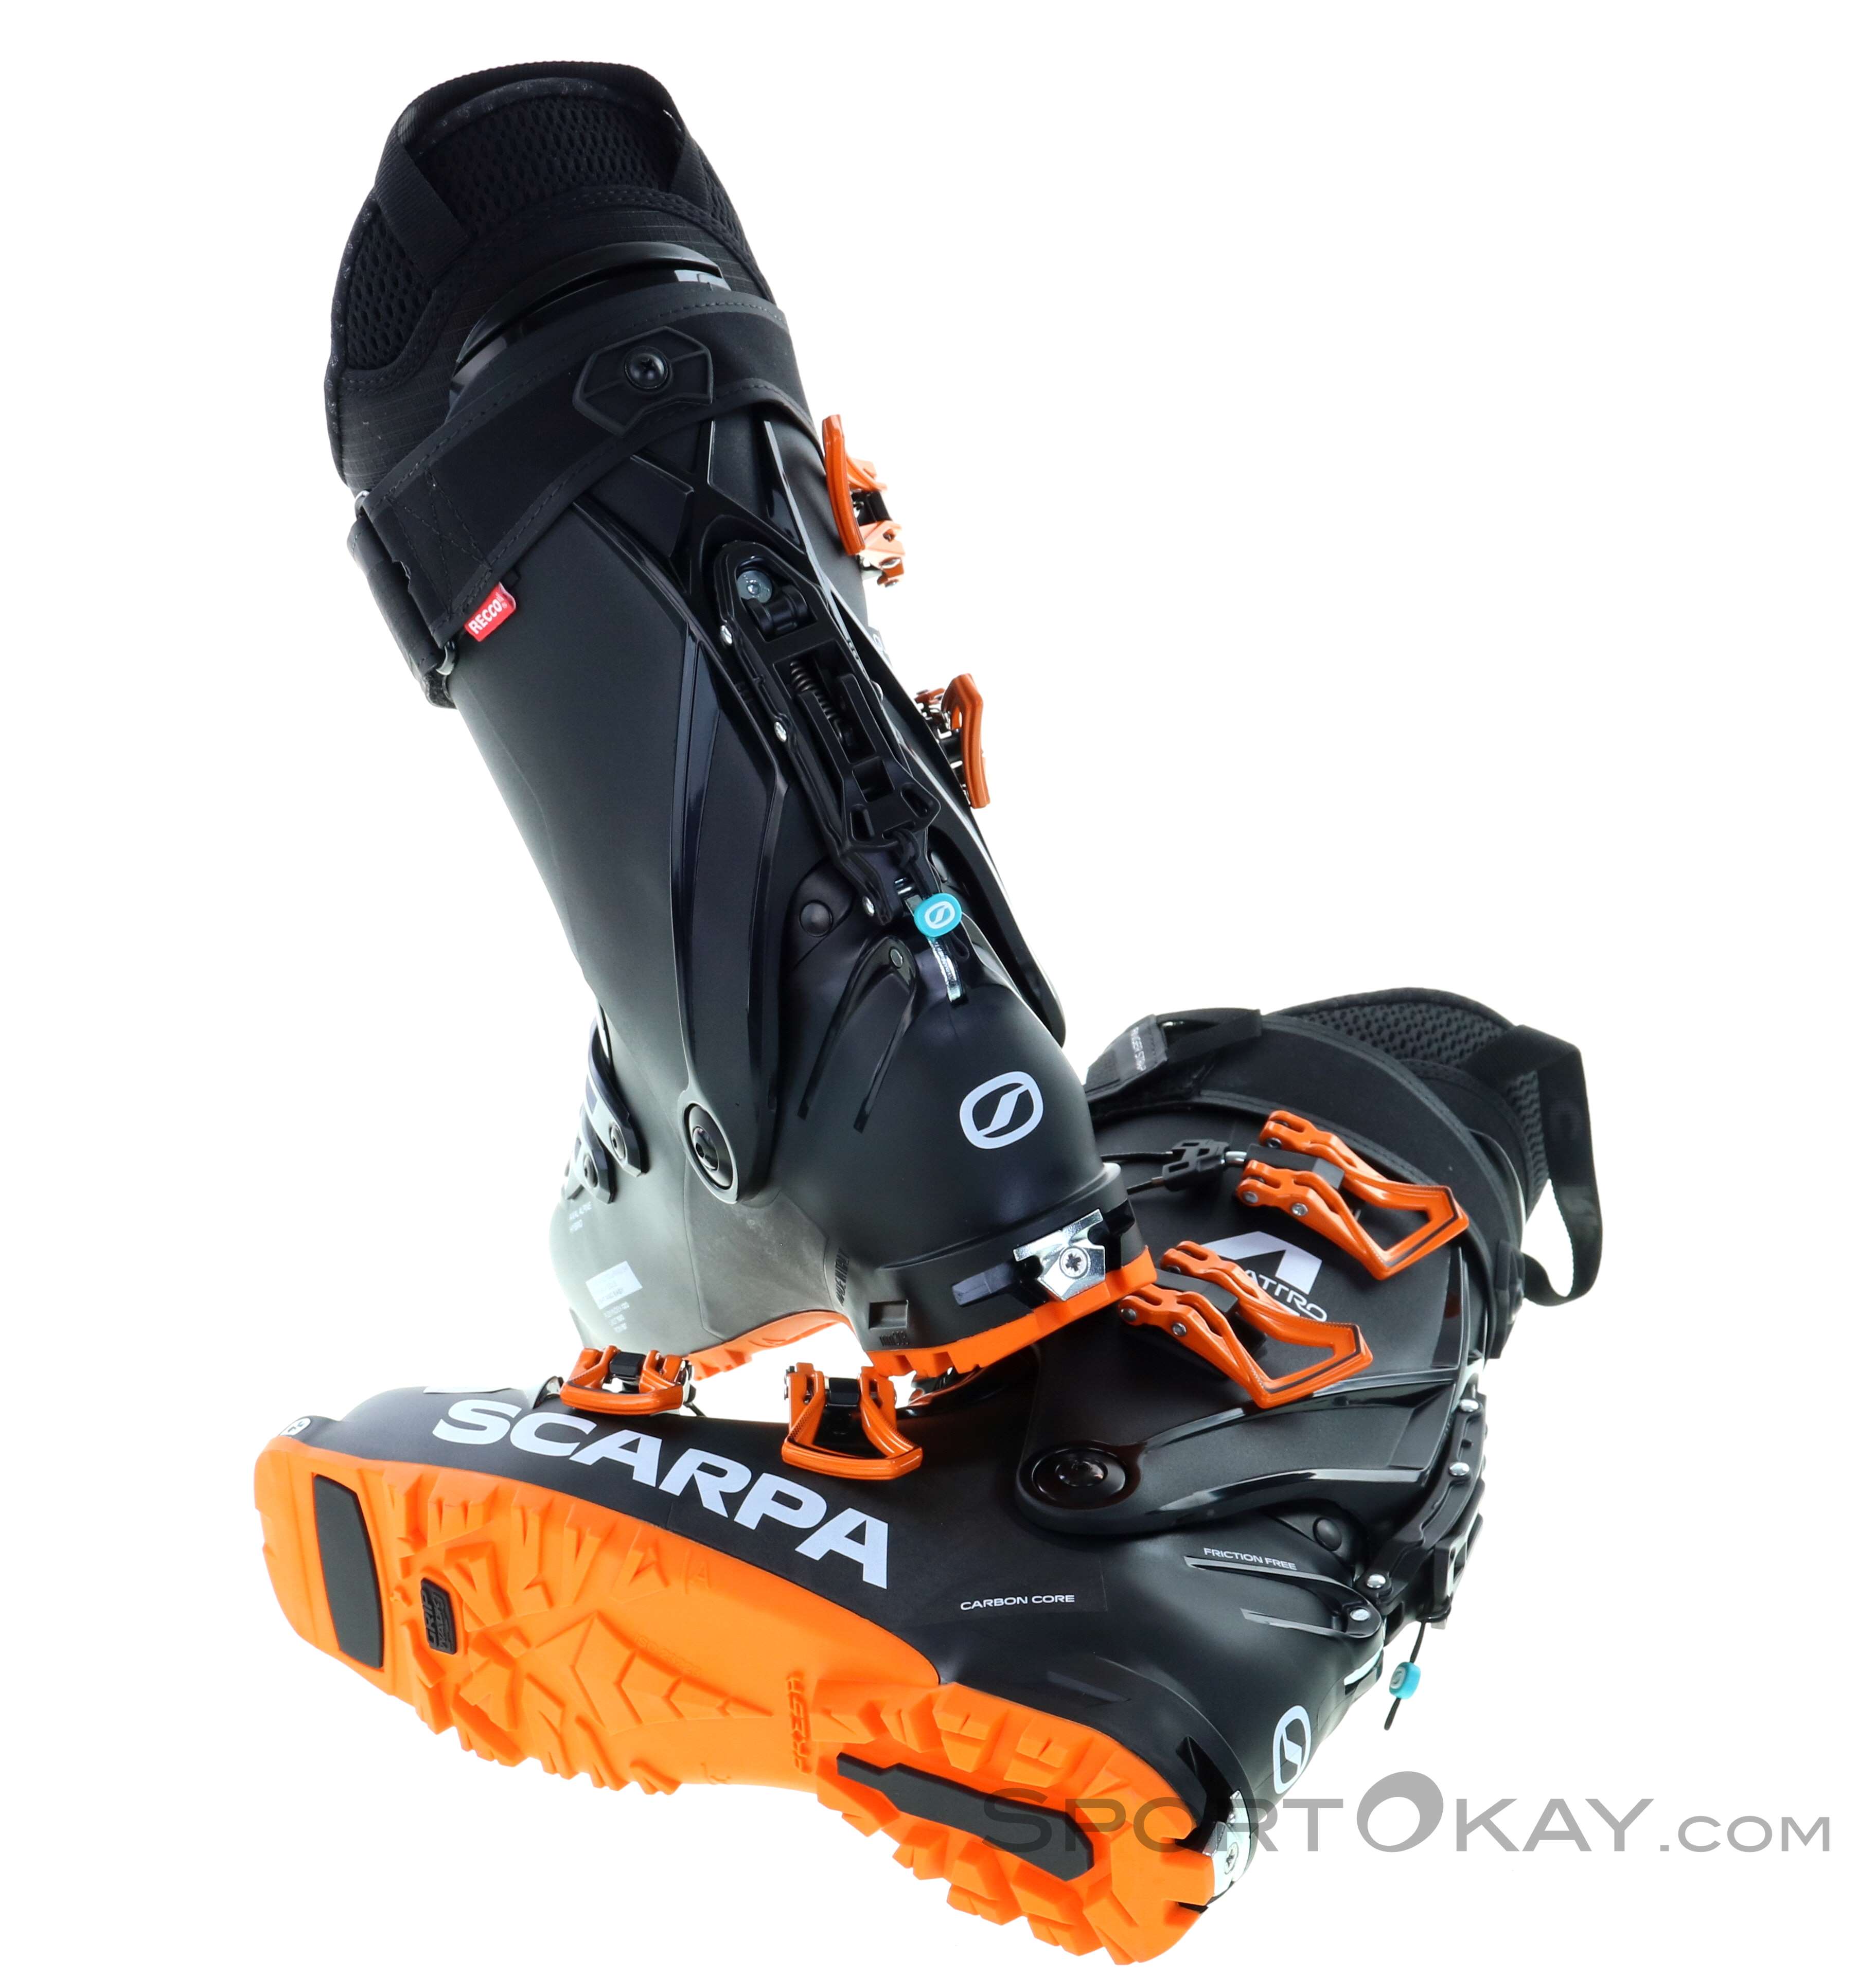 Scarpa 4-Quattro Mens Ski Touring Boots - Ski Touring Boots - Touring Boots Ski Touring - All